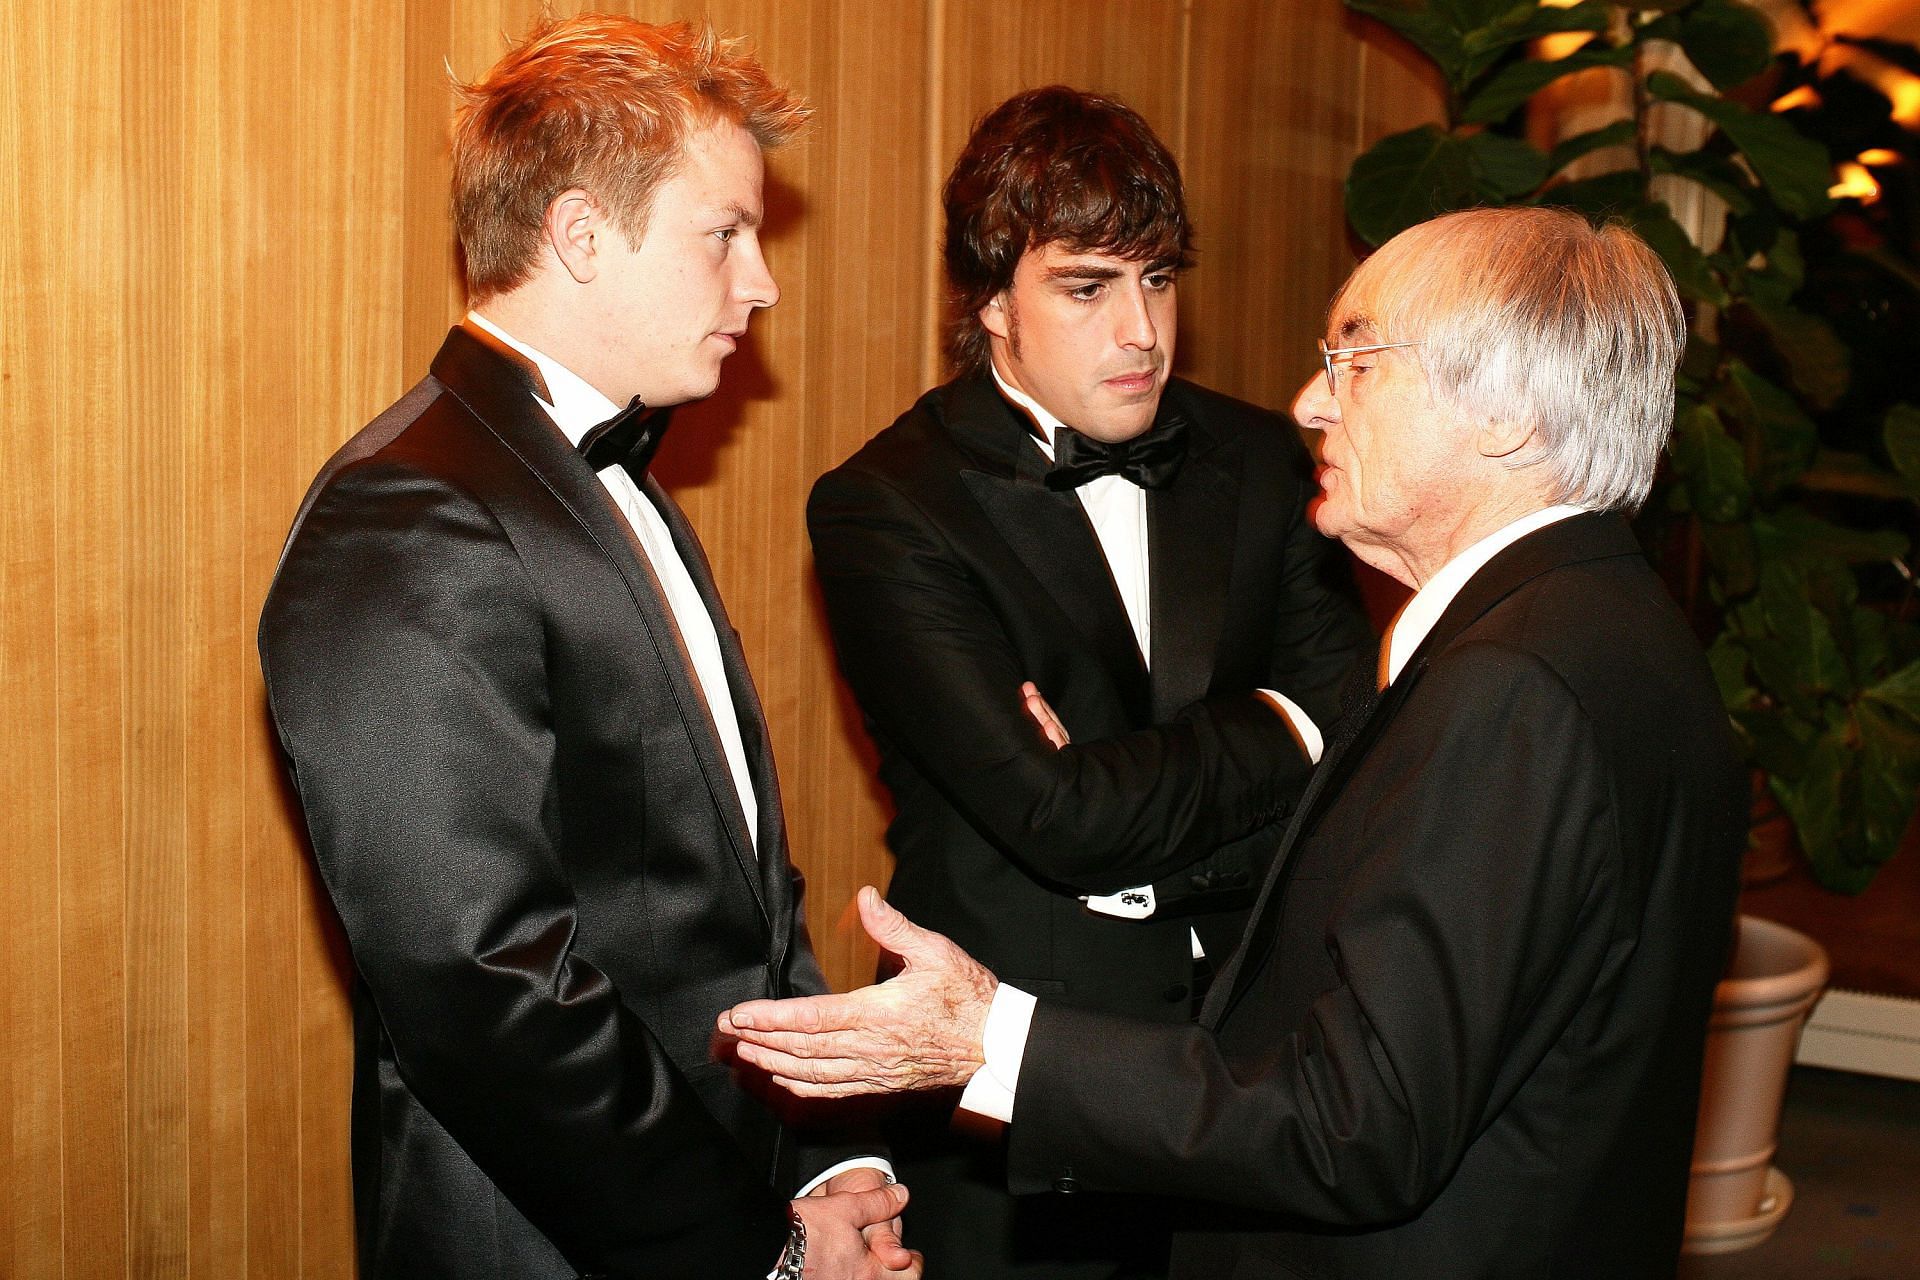 Kimi Raikkonen (left) and former F1 boss Bernie Ecclestone (right) at the FIA Prize Giving Gala in 2007 (Photo by FIA via Getty Images)